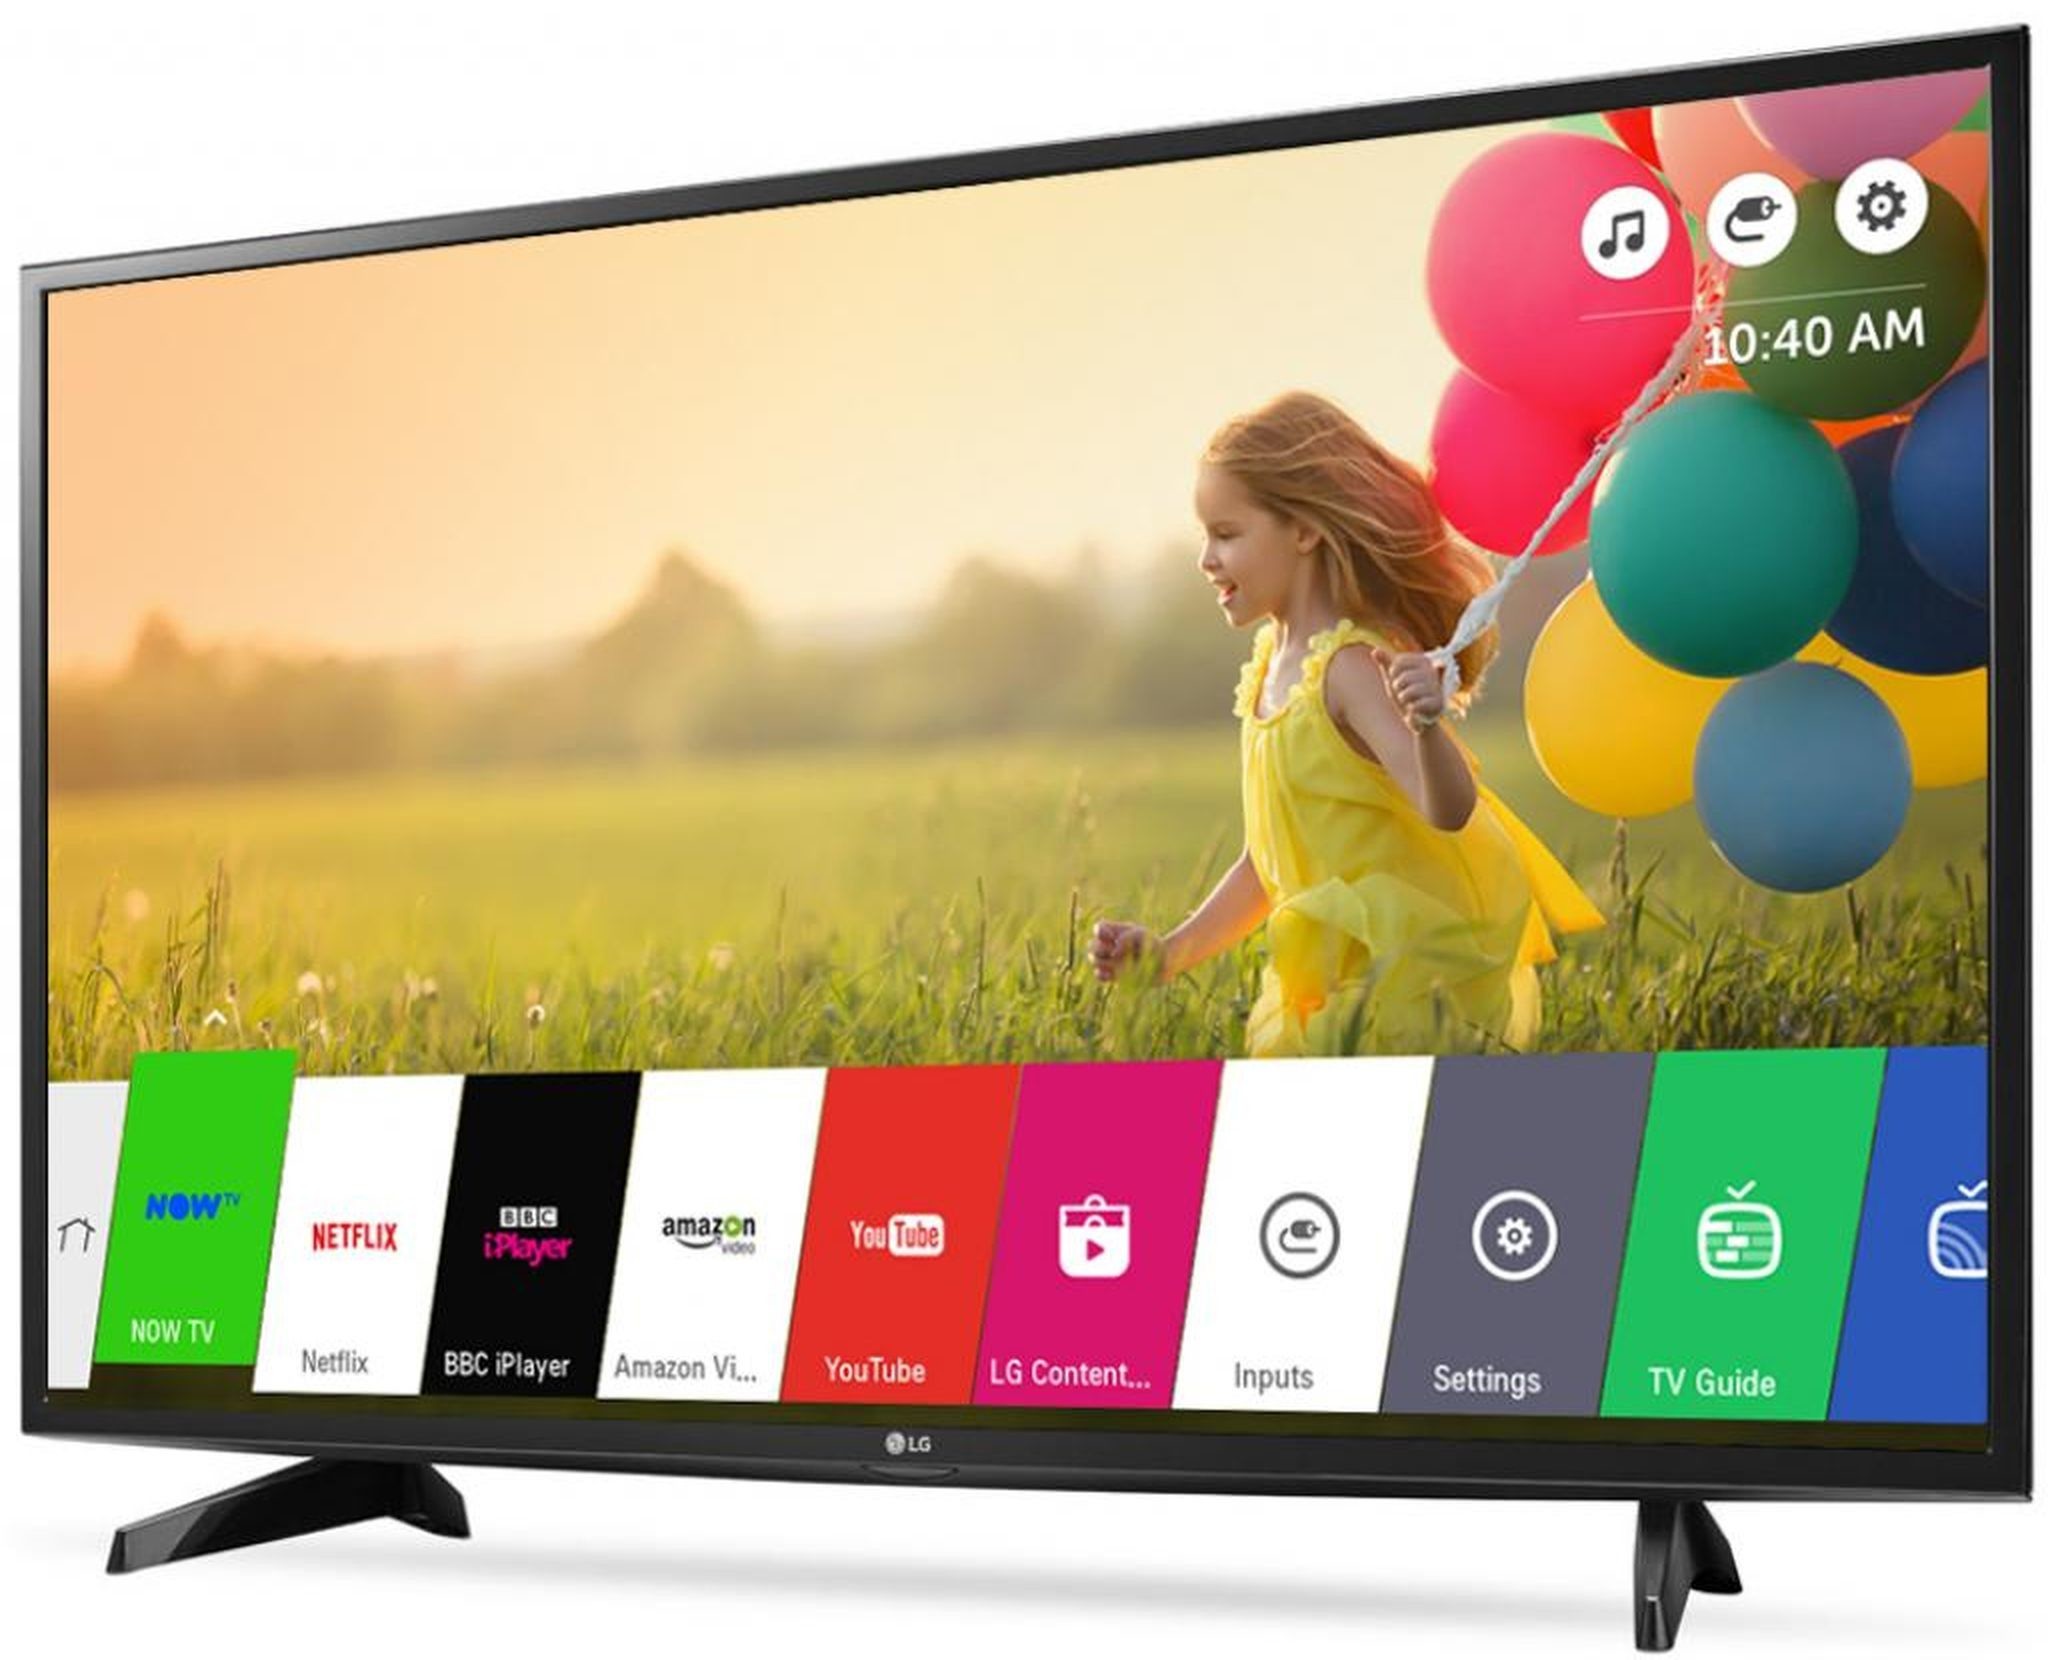 Самара купить телевизор смарт. Телевизор LG 43 дюйма смарт ТВ. Телевизор LG Smart TV lh570v. LG 43lh570v. Lg43lh570v-ZD.